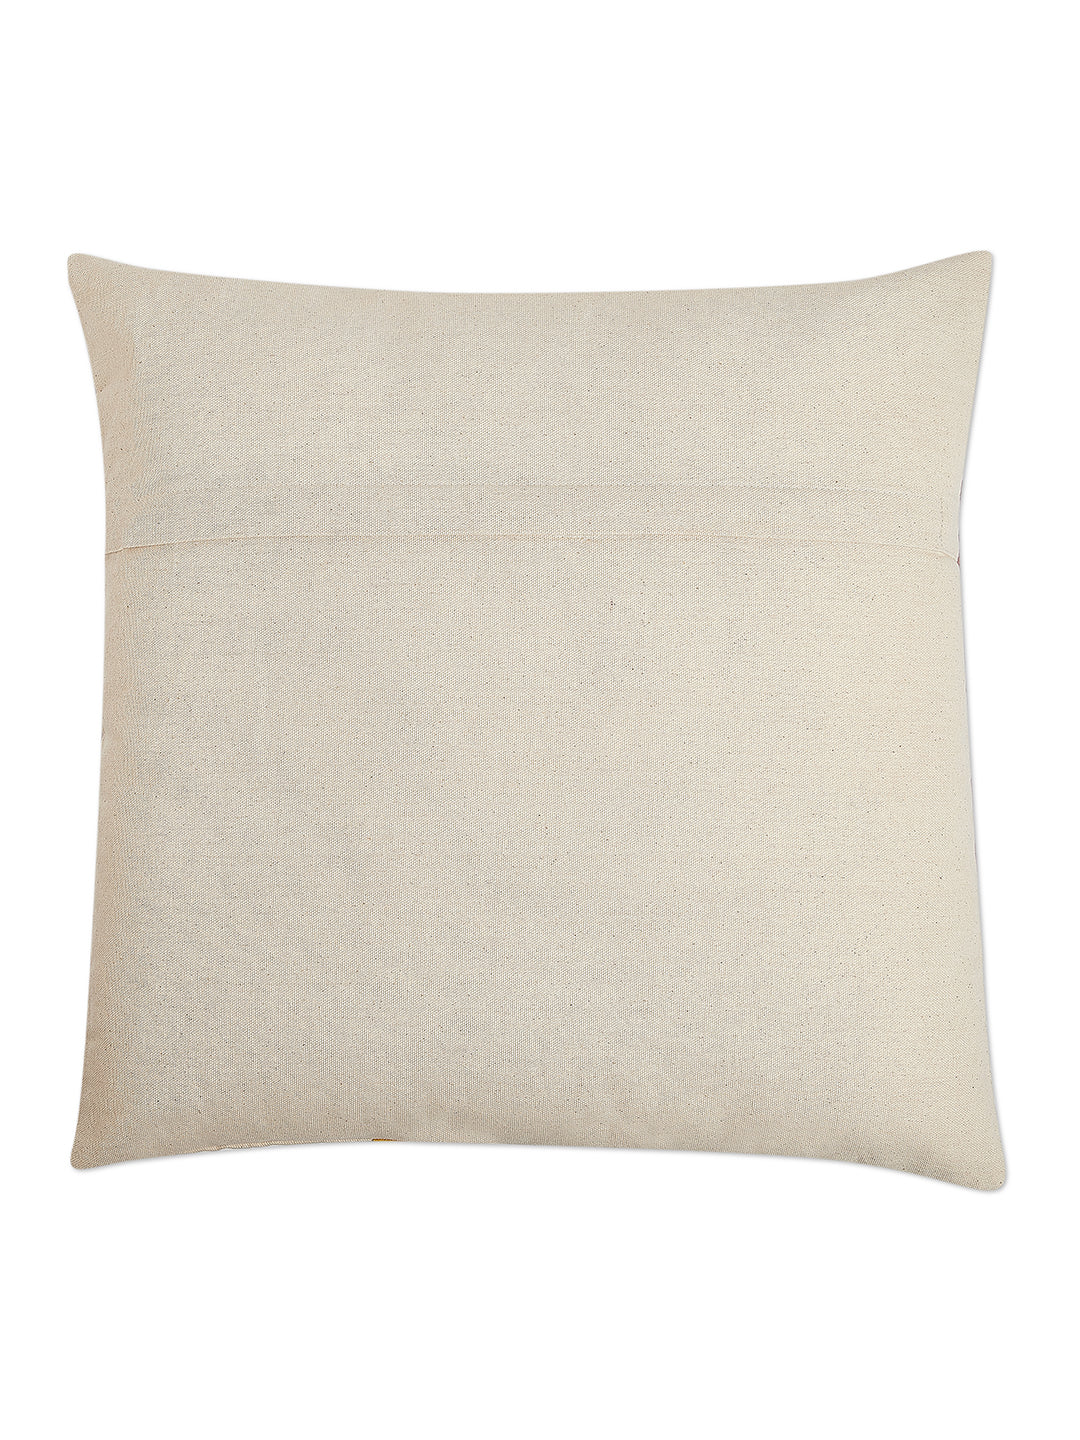 Daylight Cushion Cover - Velvet patchwork